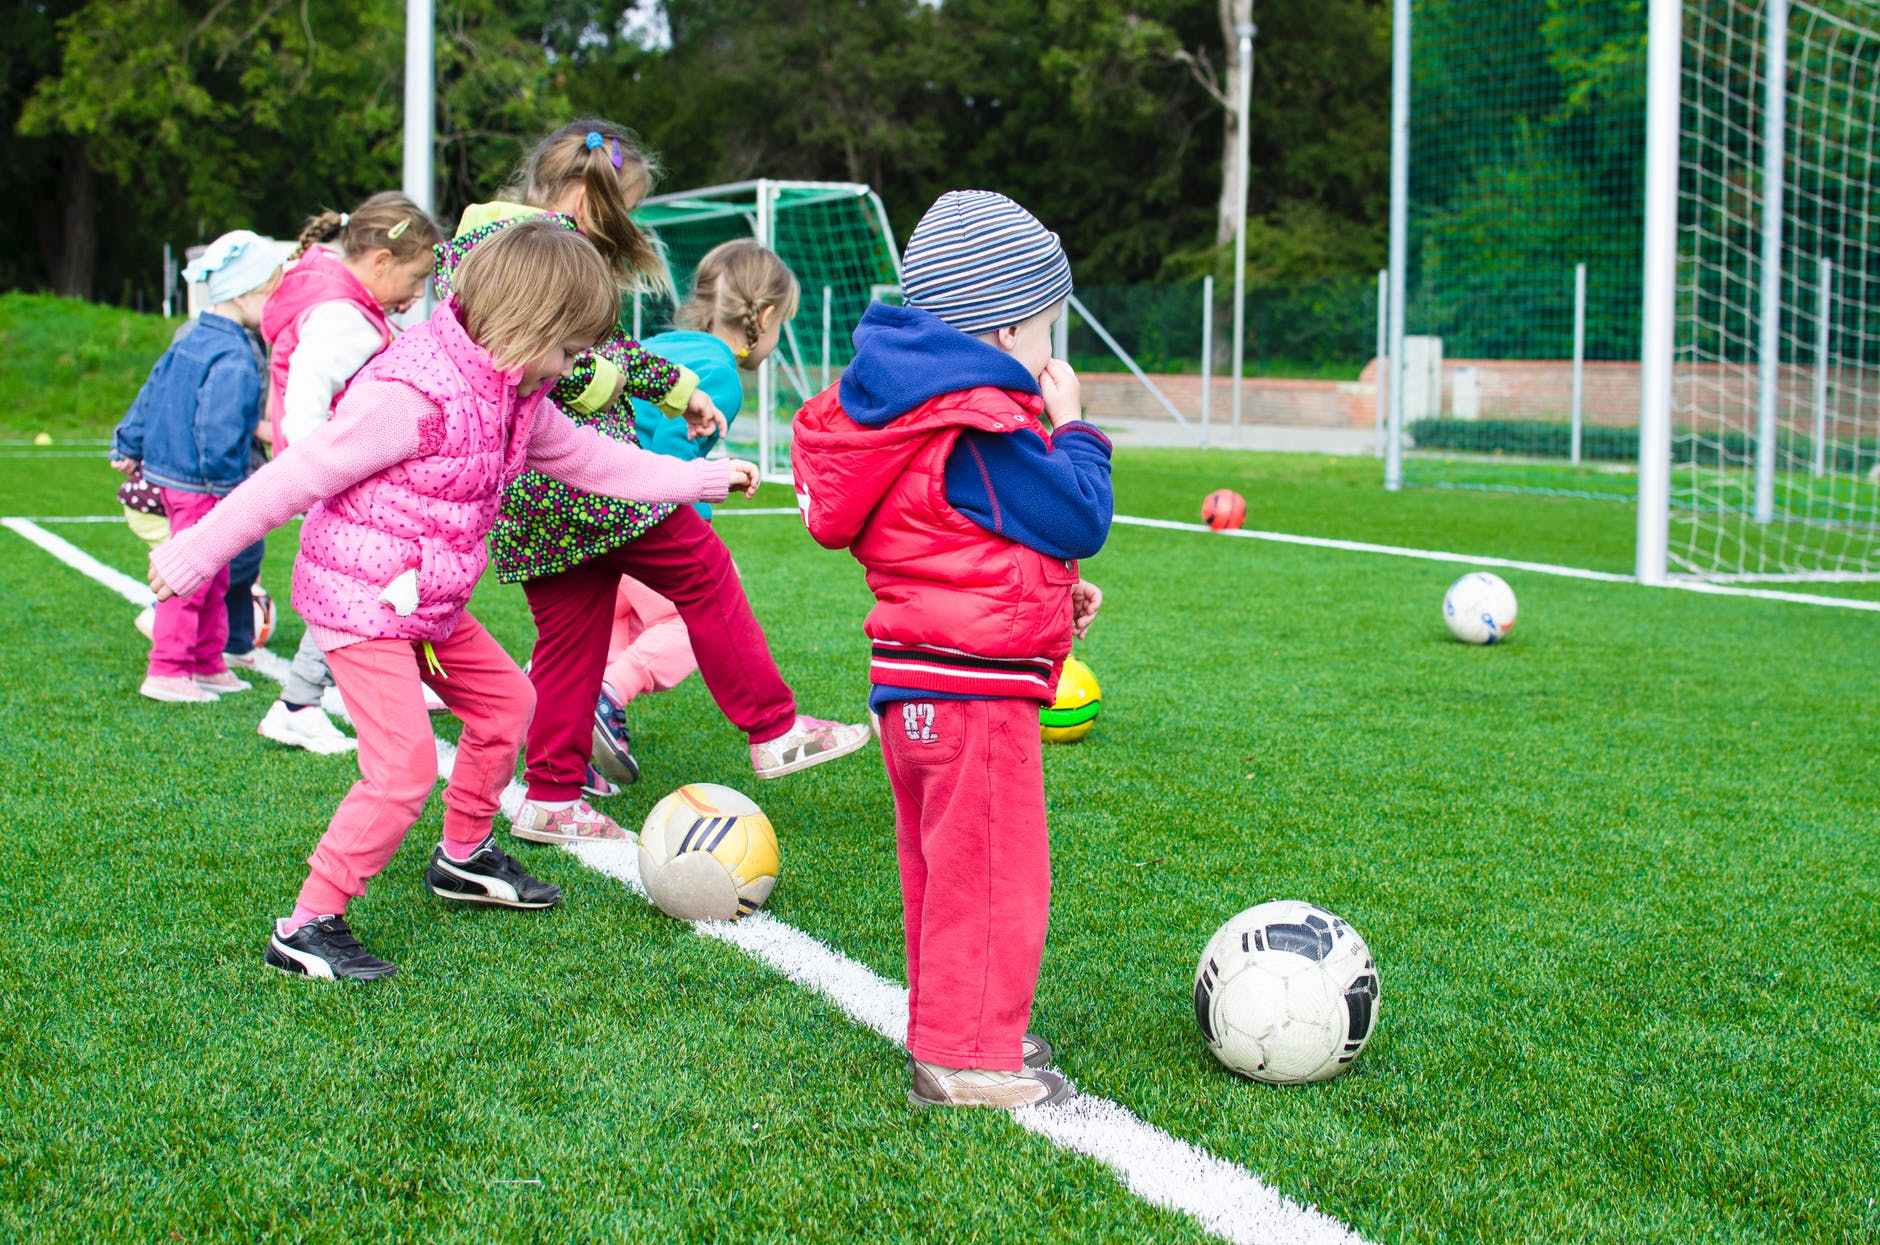 Kinder und Jugendliche, Integration, Bürokratieabbau – Was die SPD im Sport fördern will